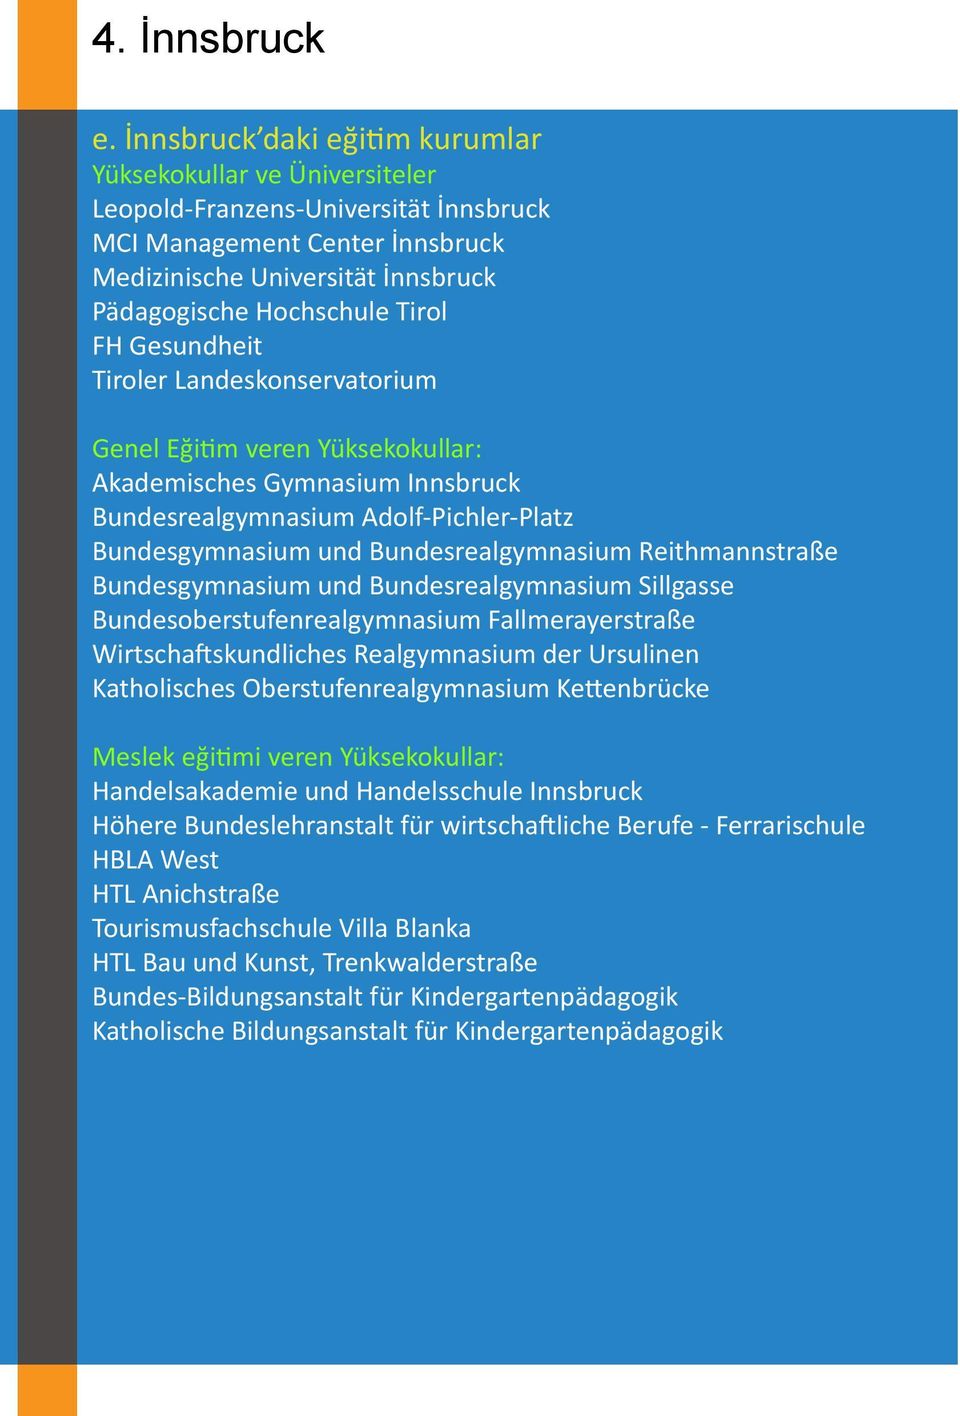 FH Gesundheit Tiroler Landeskonservatorium Genel Eğitim veren Yüksekokullar: Akademisches Gymnasium Innsbruck Bundesrealgymnasium Adolf-Pichler-Platz Bundesgymnasium und Bundesrealgymnasium